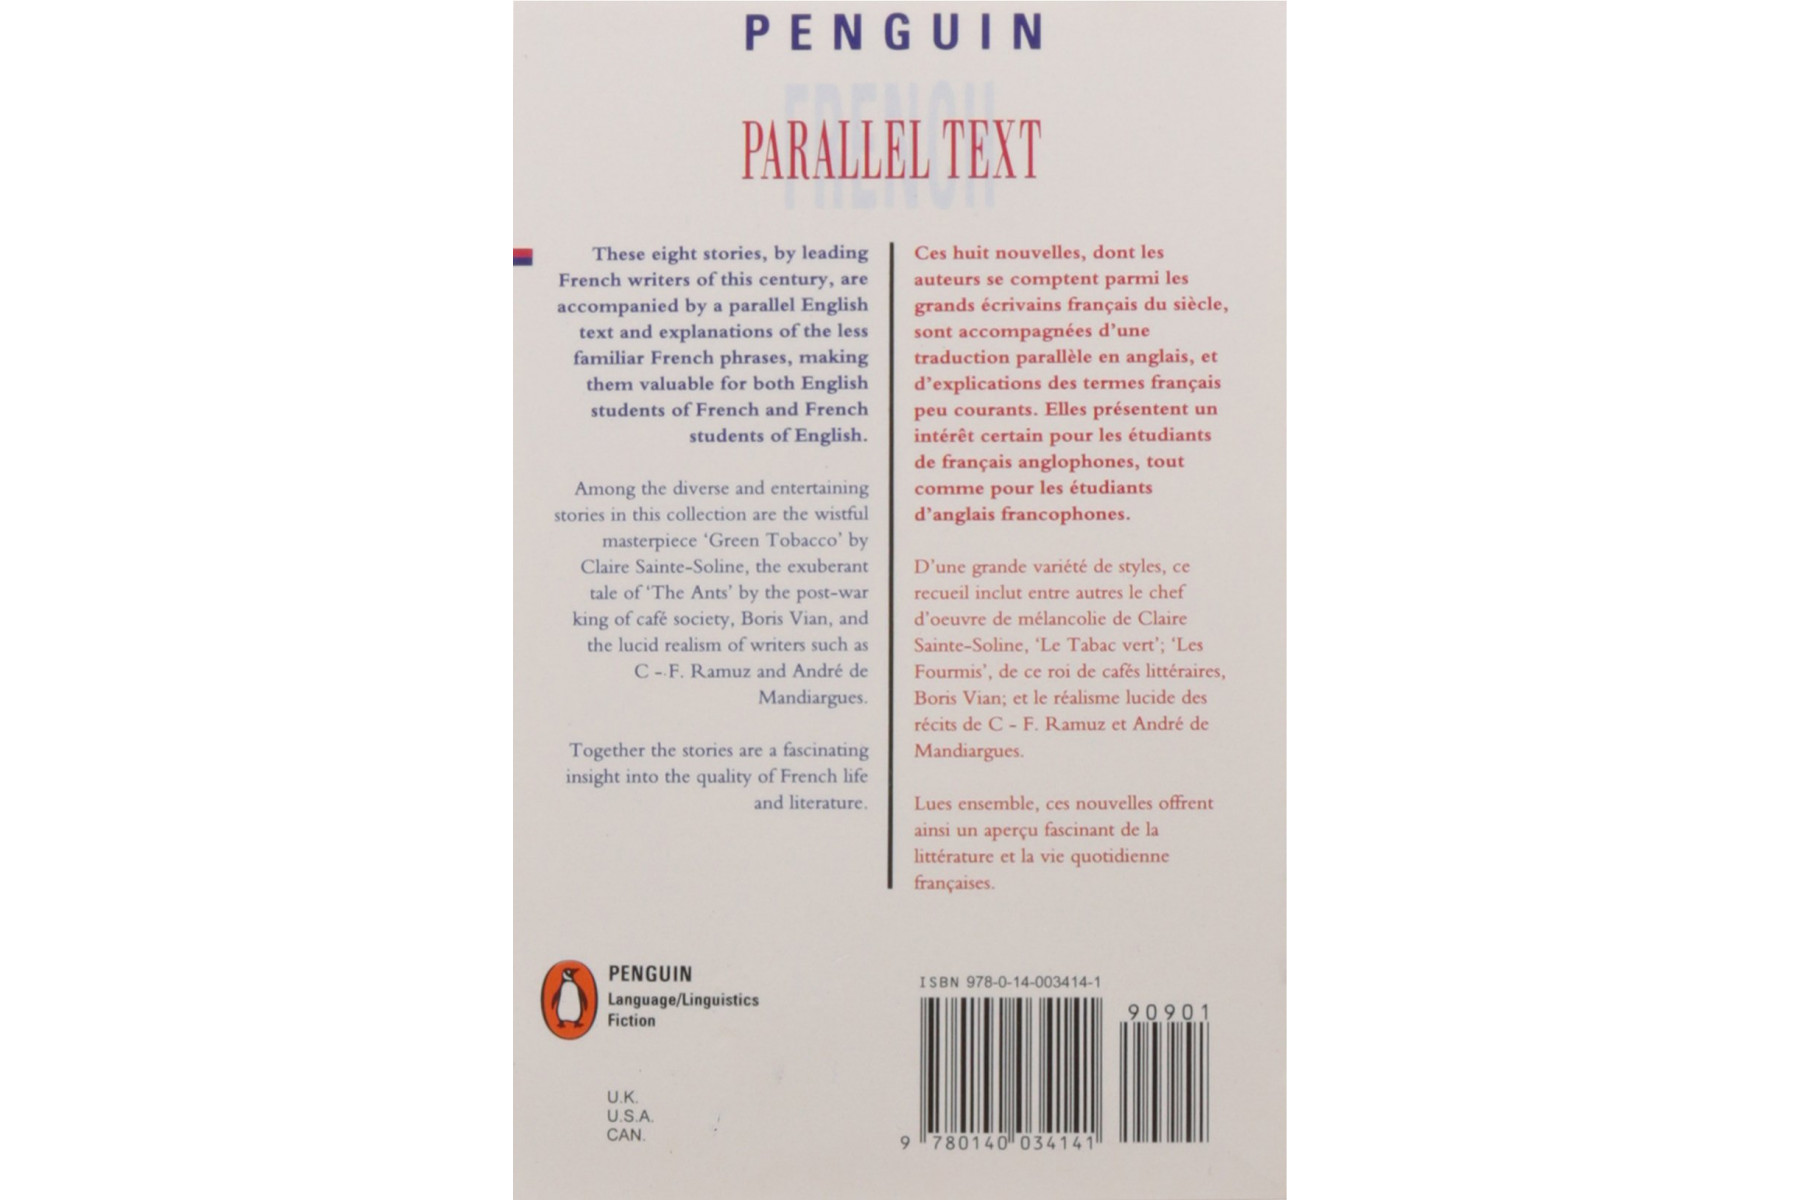 French short stories: Nouvelles Francaises: Volume 2 (Penguin Parallel Text Series)